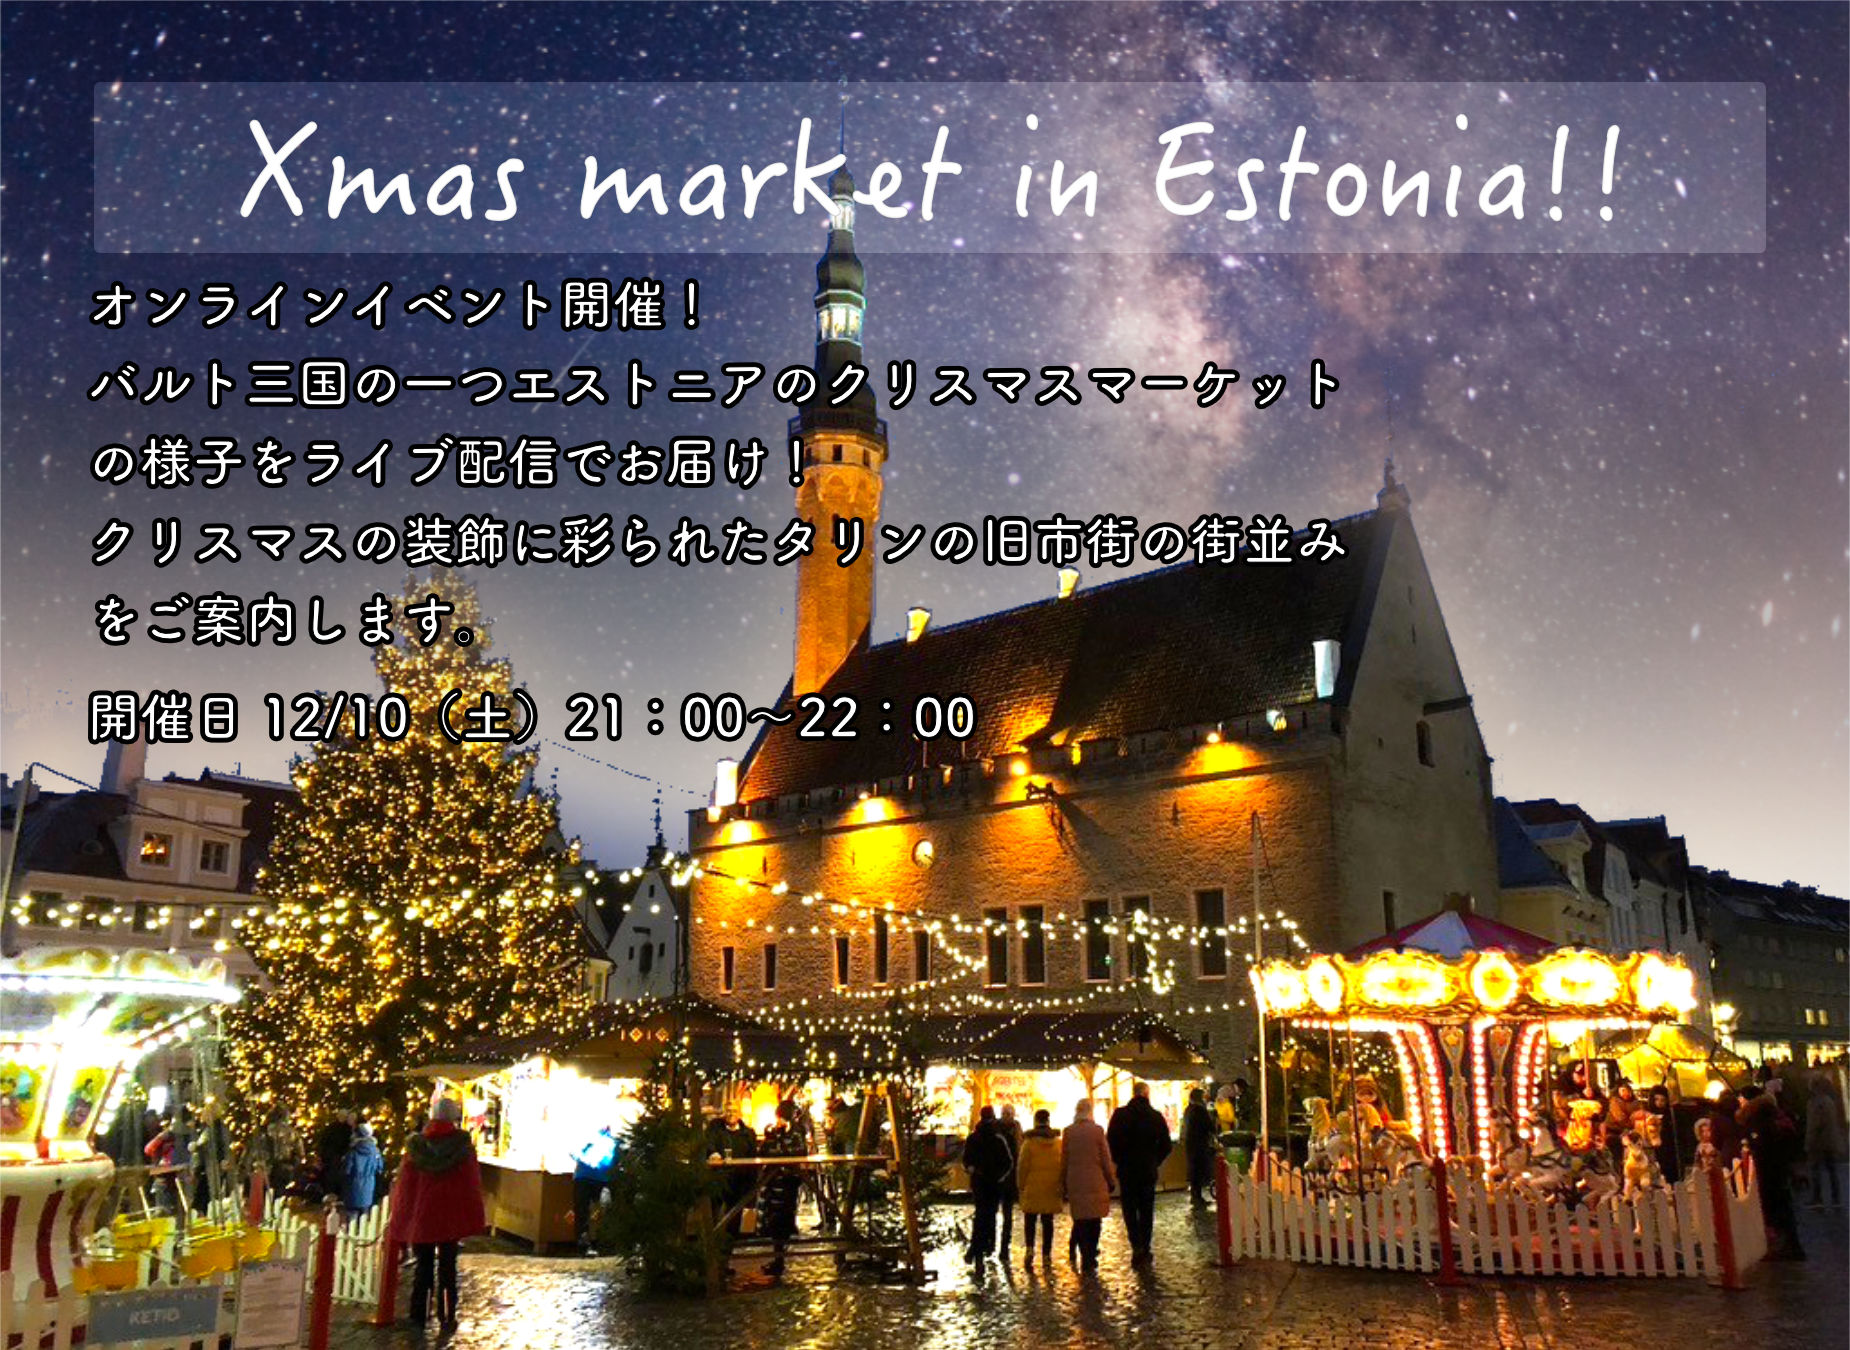 ライブ配信 Xmas market in Estonia!! 開催のお知らせ。